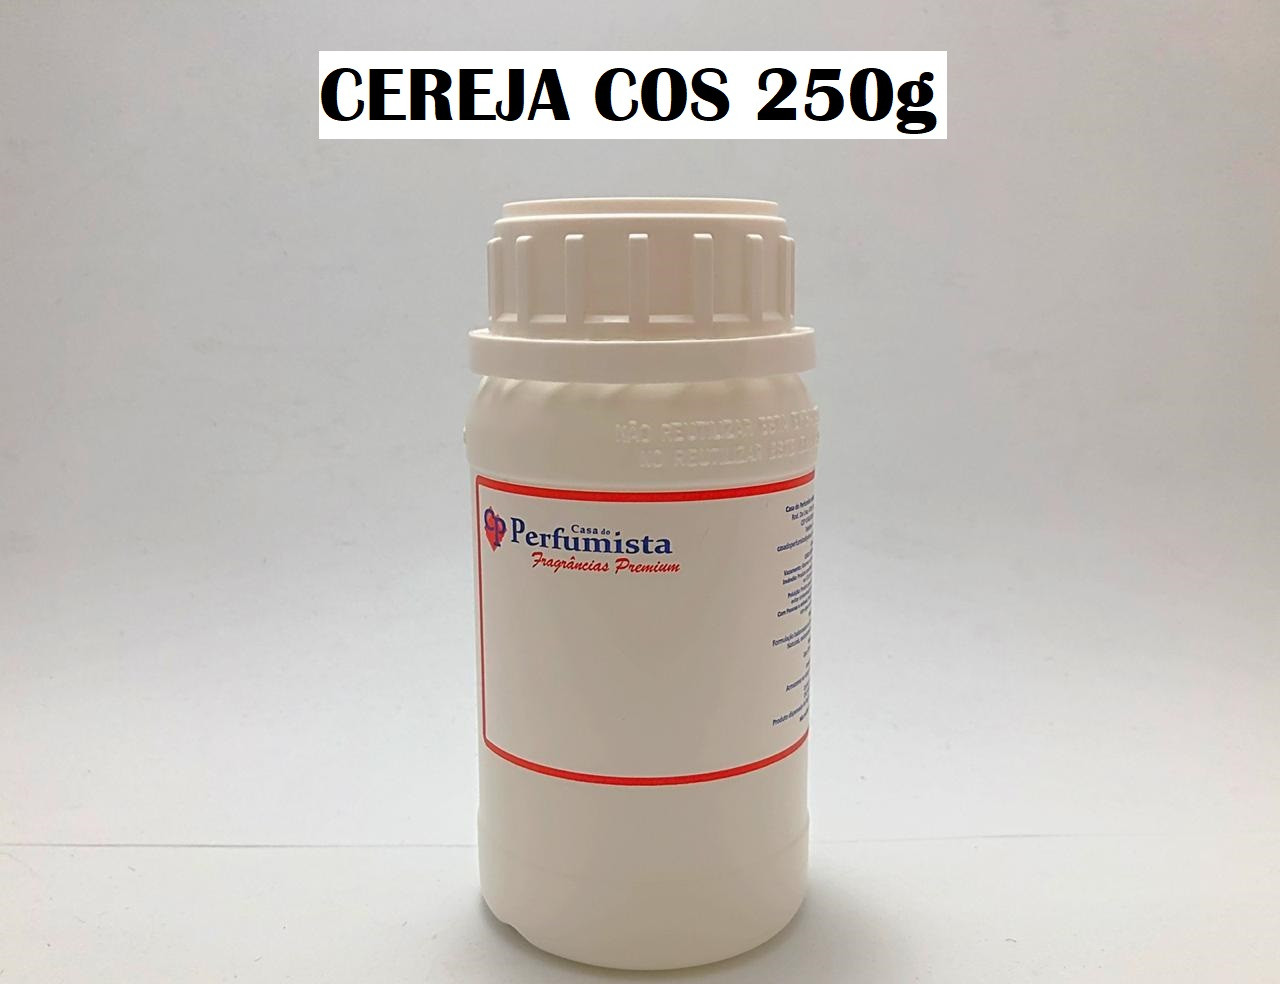 CEREJA COS - 250g